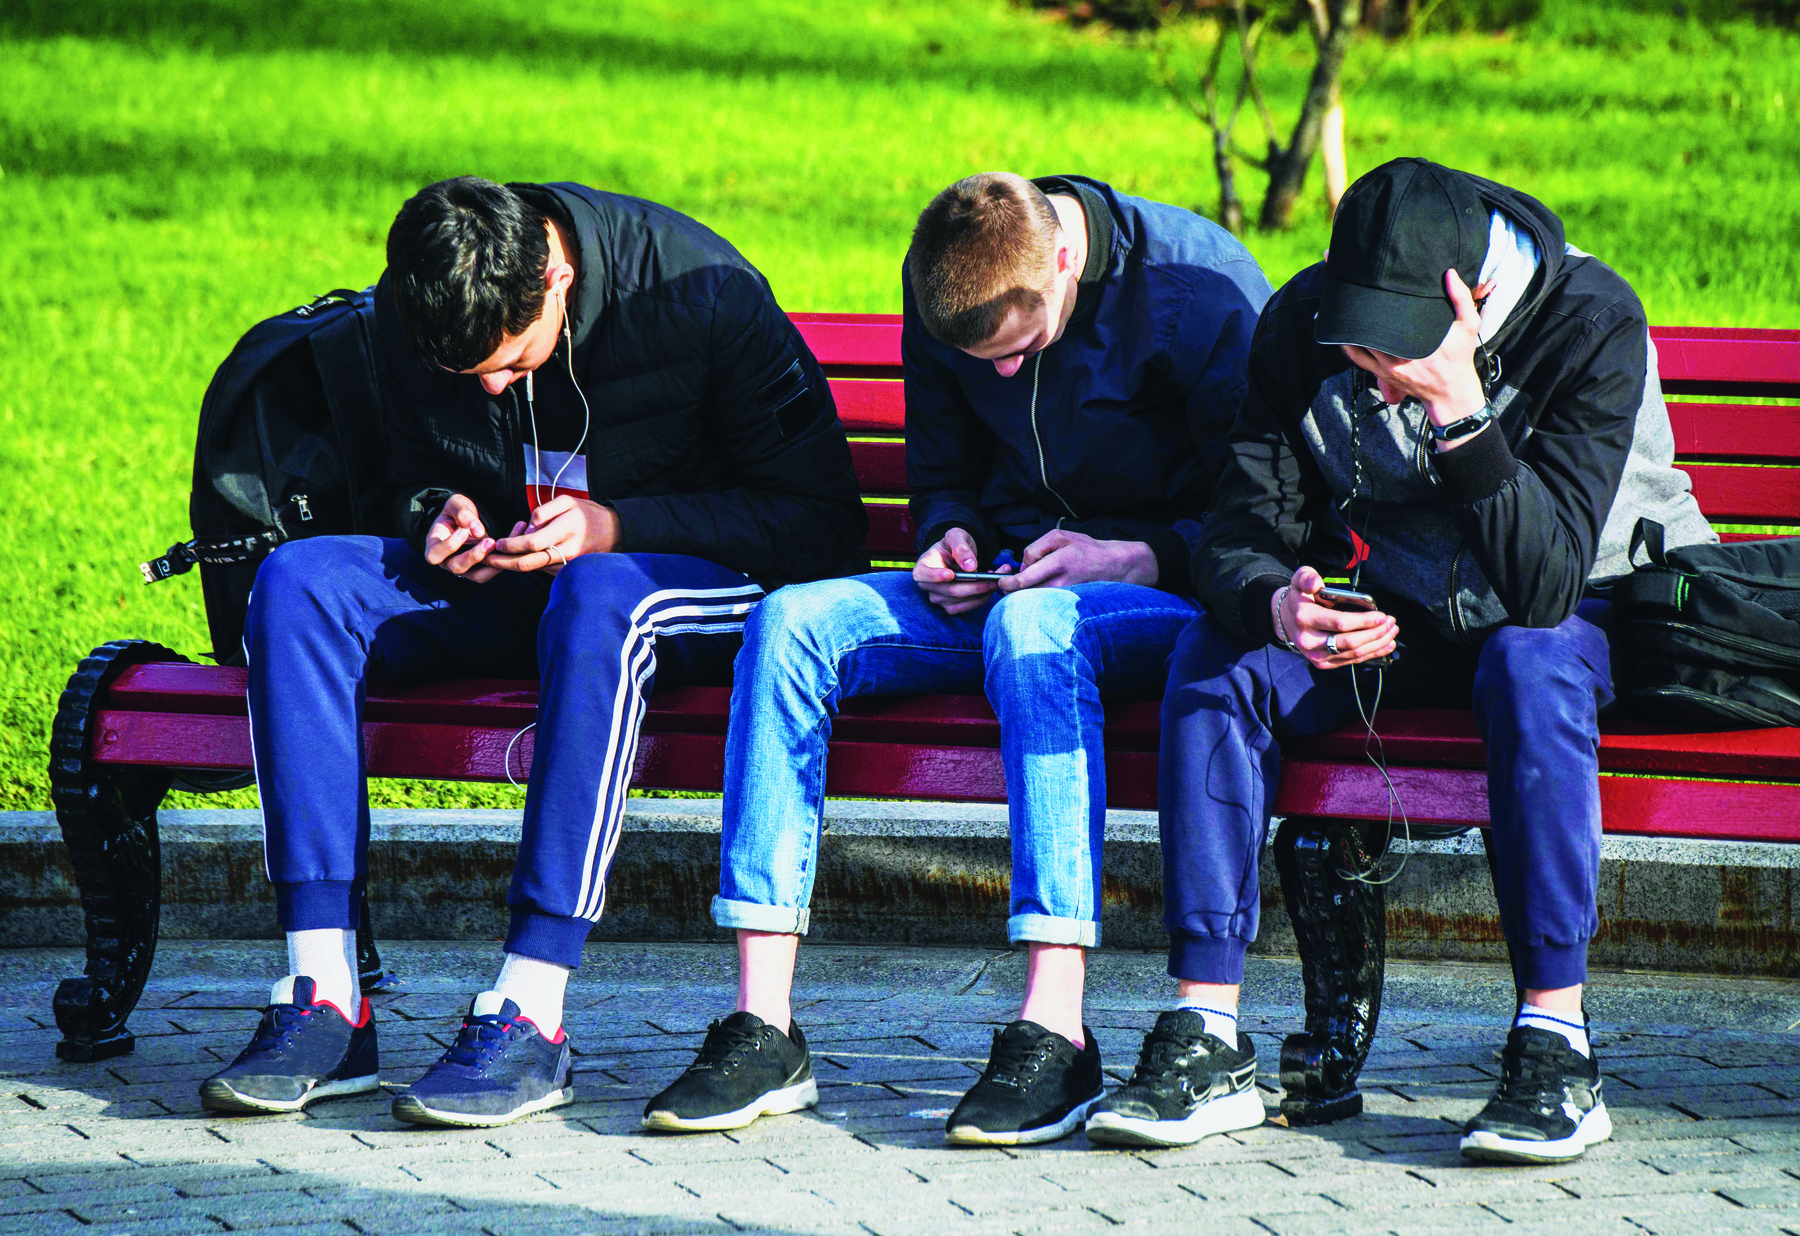 Fotografia. Três rapazes sentados em um banco vermelho. Estão um ao lado do outro, inclinados para frente, com a cabeça abaixada, cada um olhando um telefone celular. Ao fundo, um gramado.